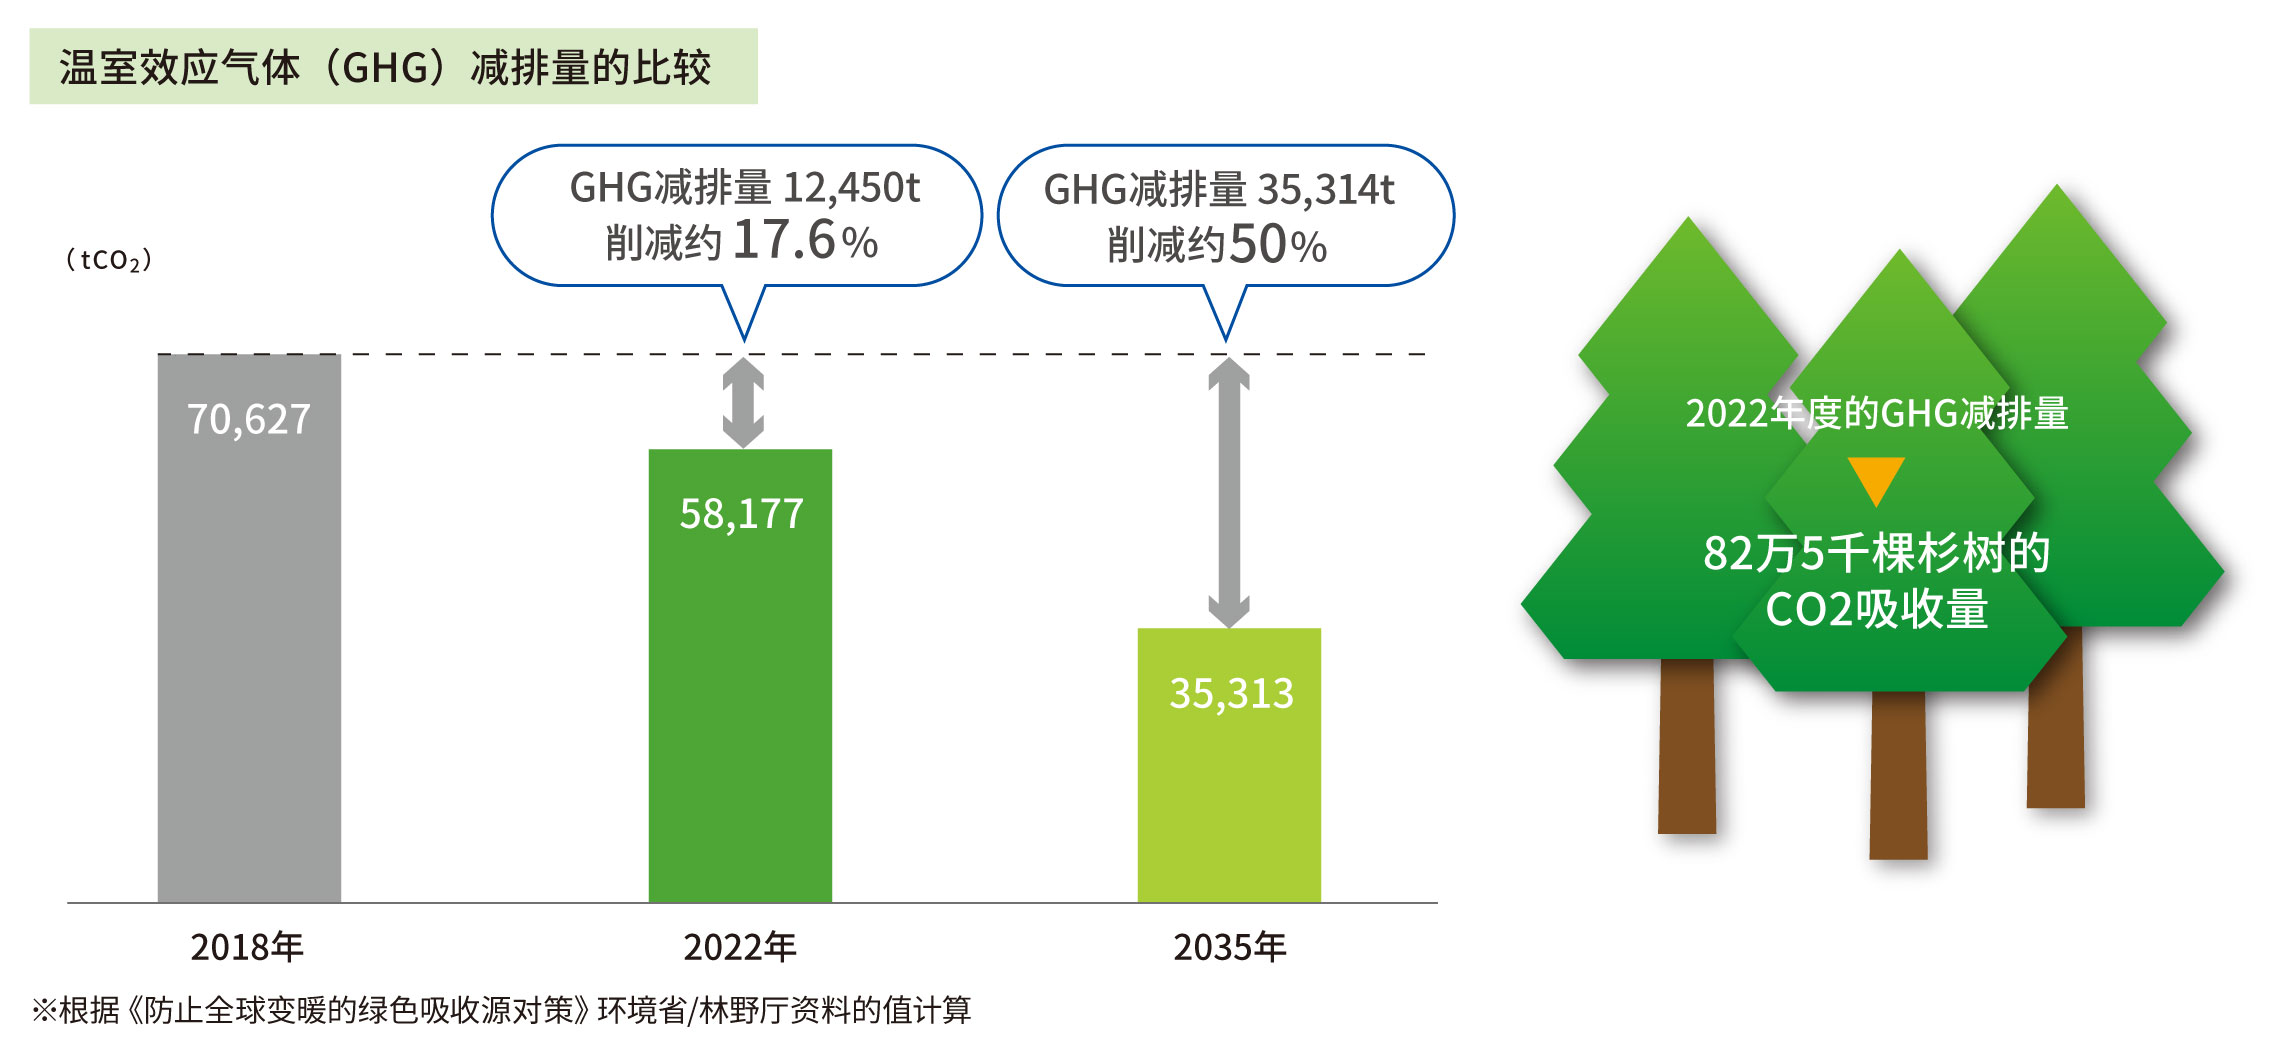 GHG排出量削減目標 2018年度→2035年度 50%削減